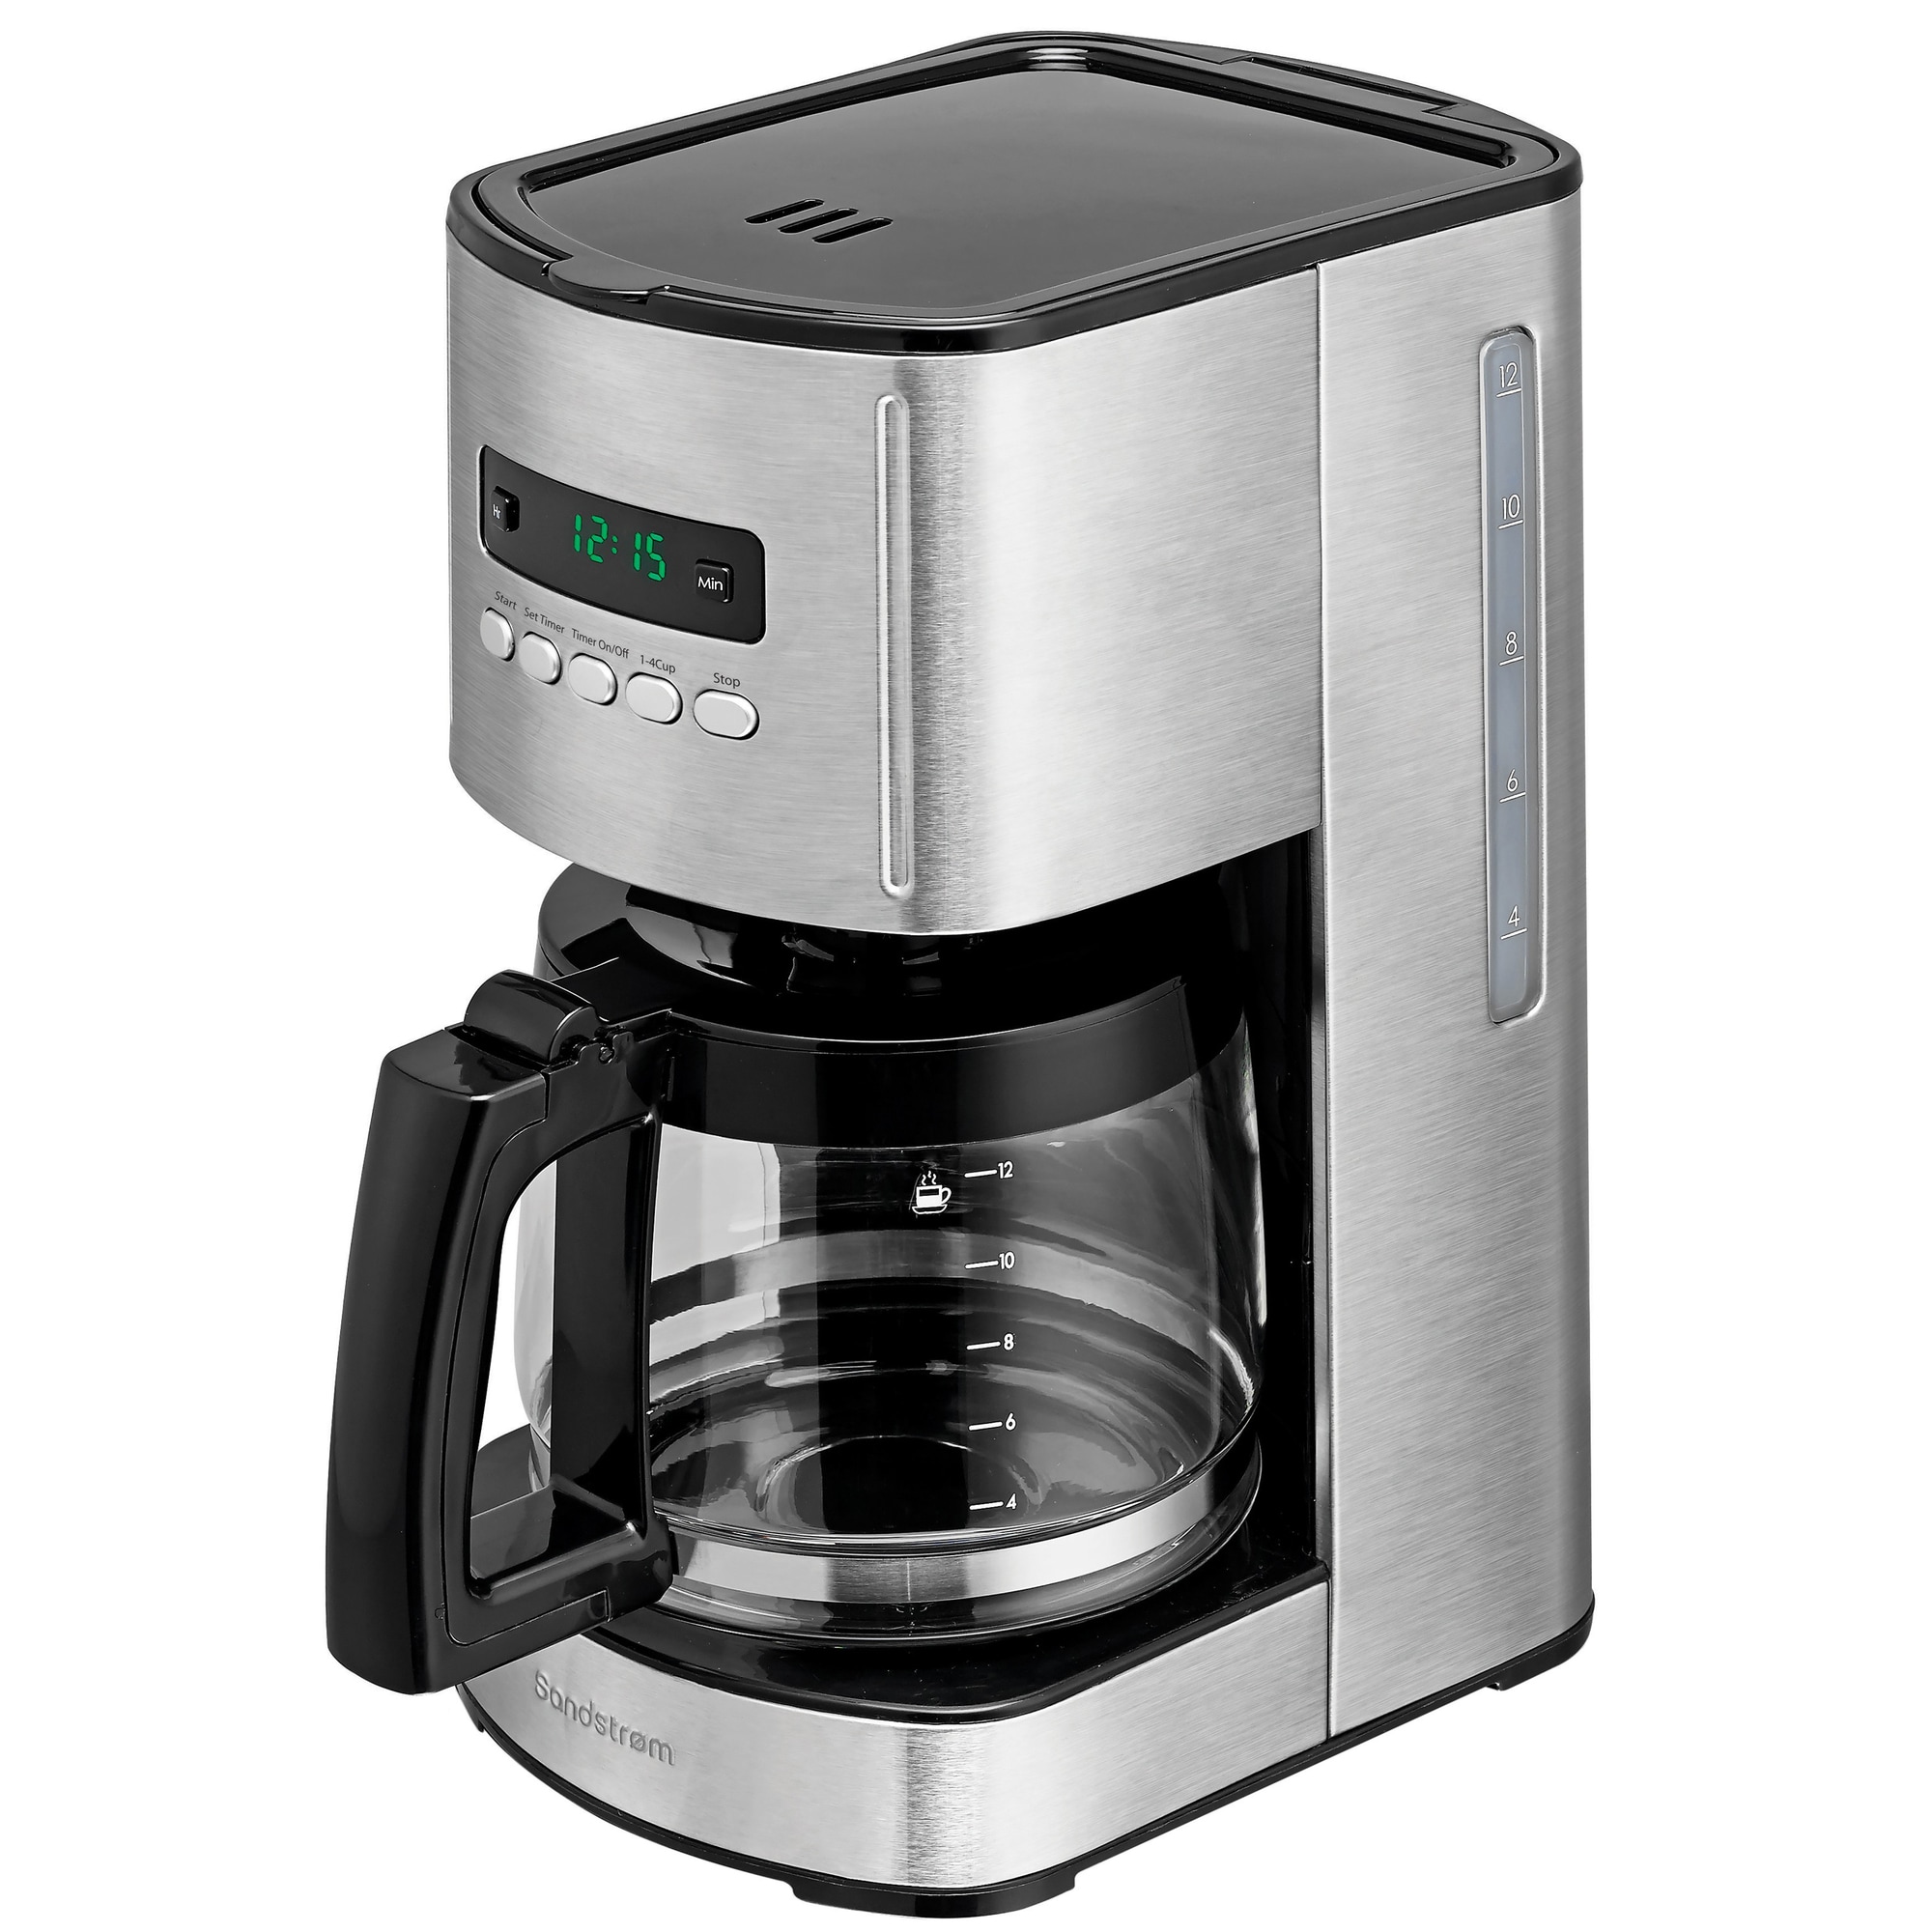 Billig Sandstrøm kaffemaskine med timer - Elgiganten